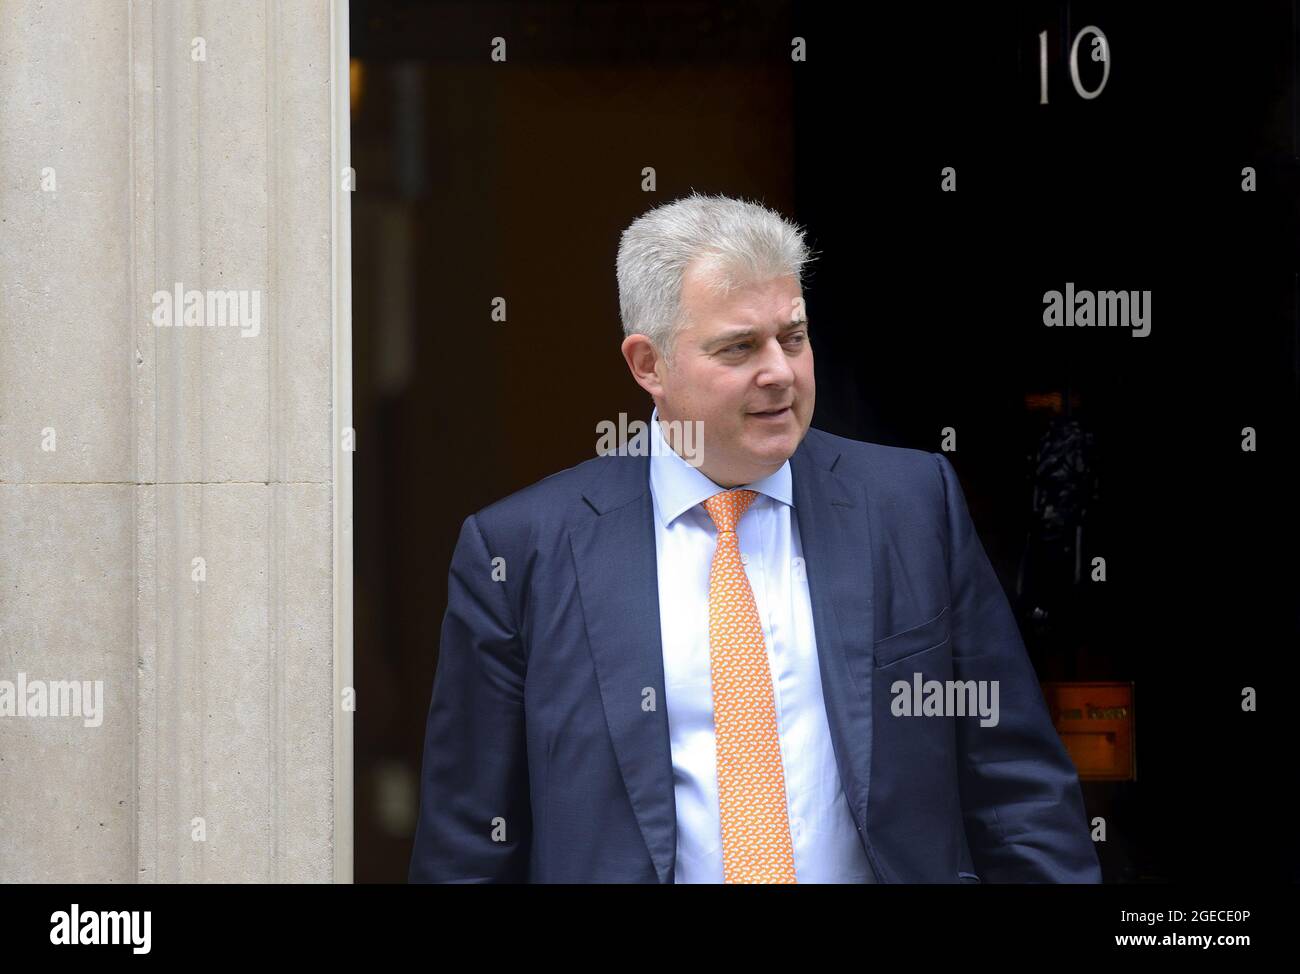 Brandon Lewis député (secrétaire d'Irlande du Nord) à Downing Street pour une rencontre avec le premier ministre, le 18 août 2021 Banque D'Images